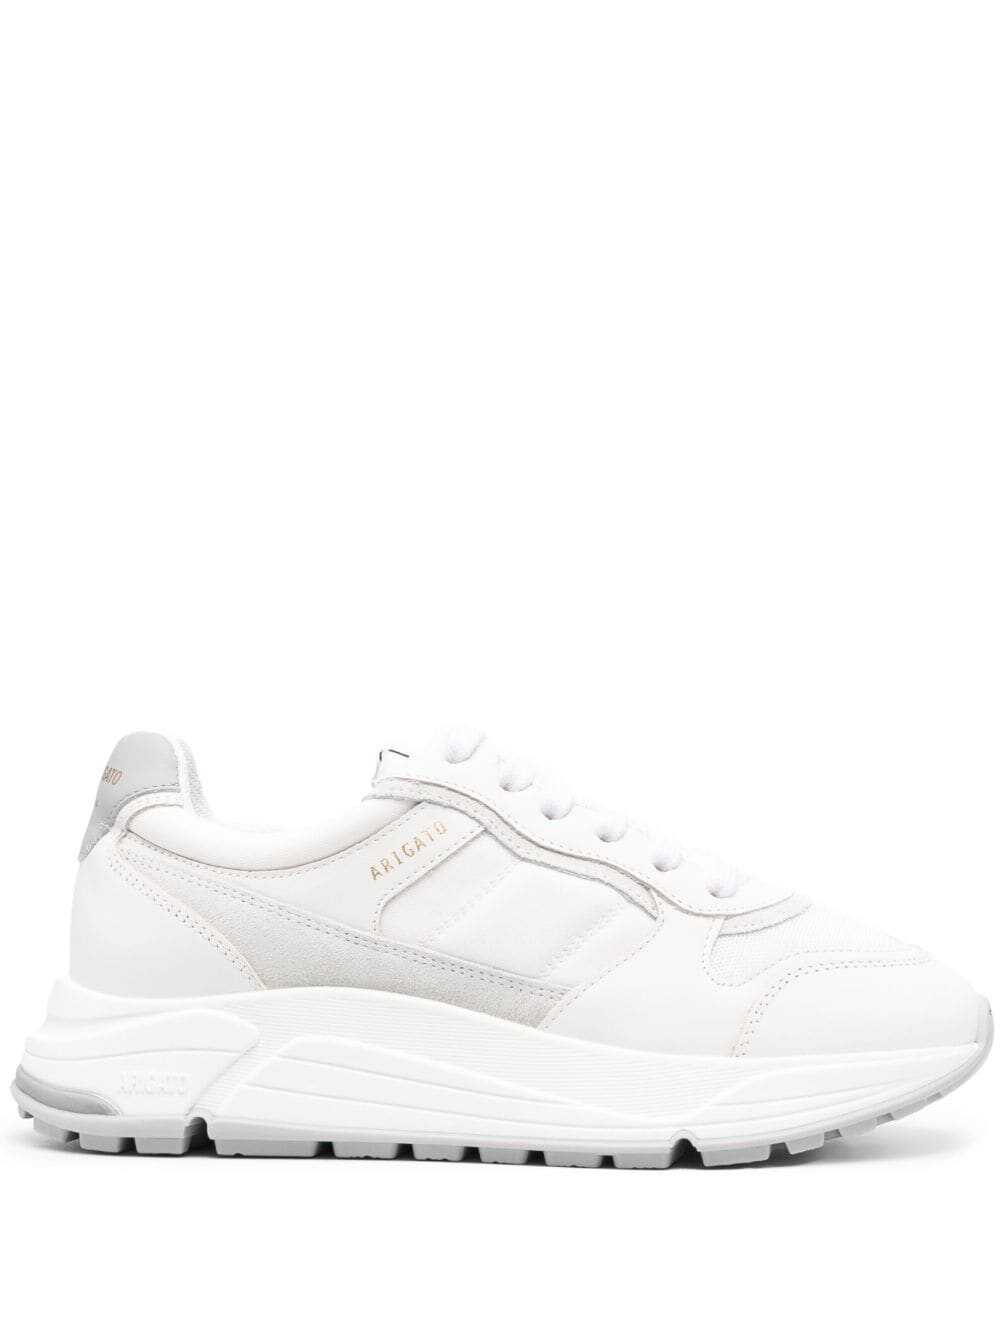 AXEL ARIGATO Sneakers White White image6